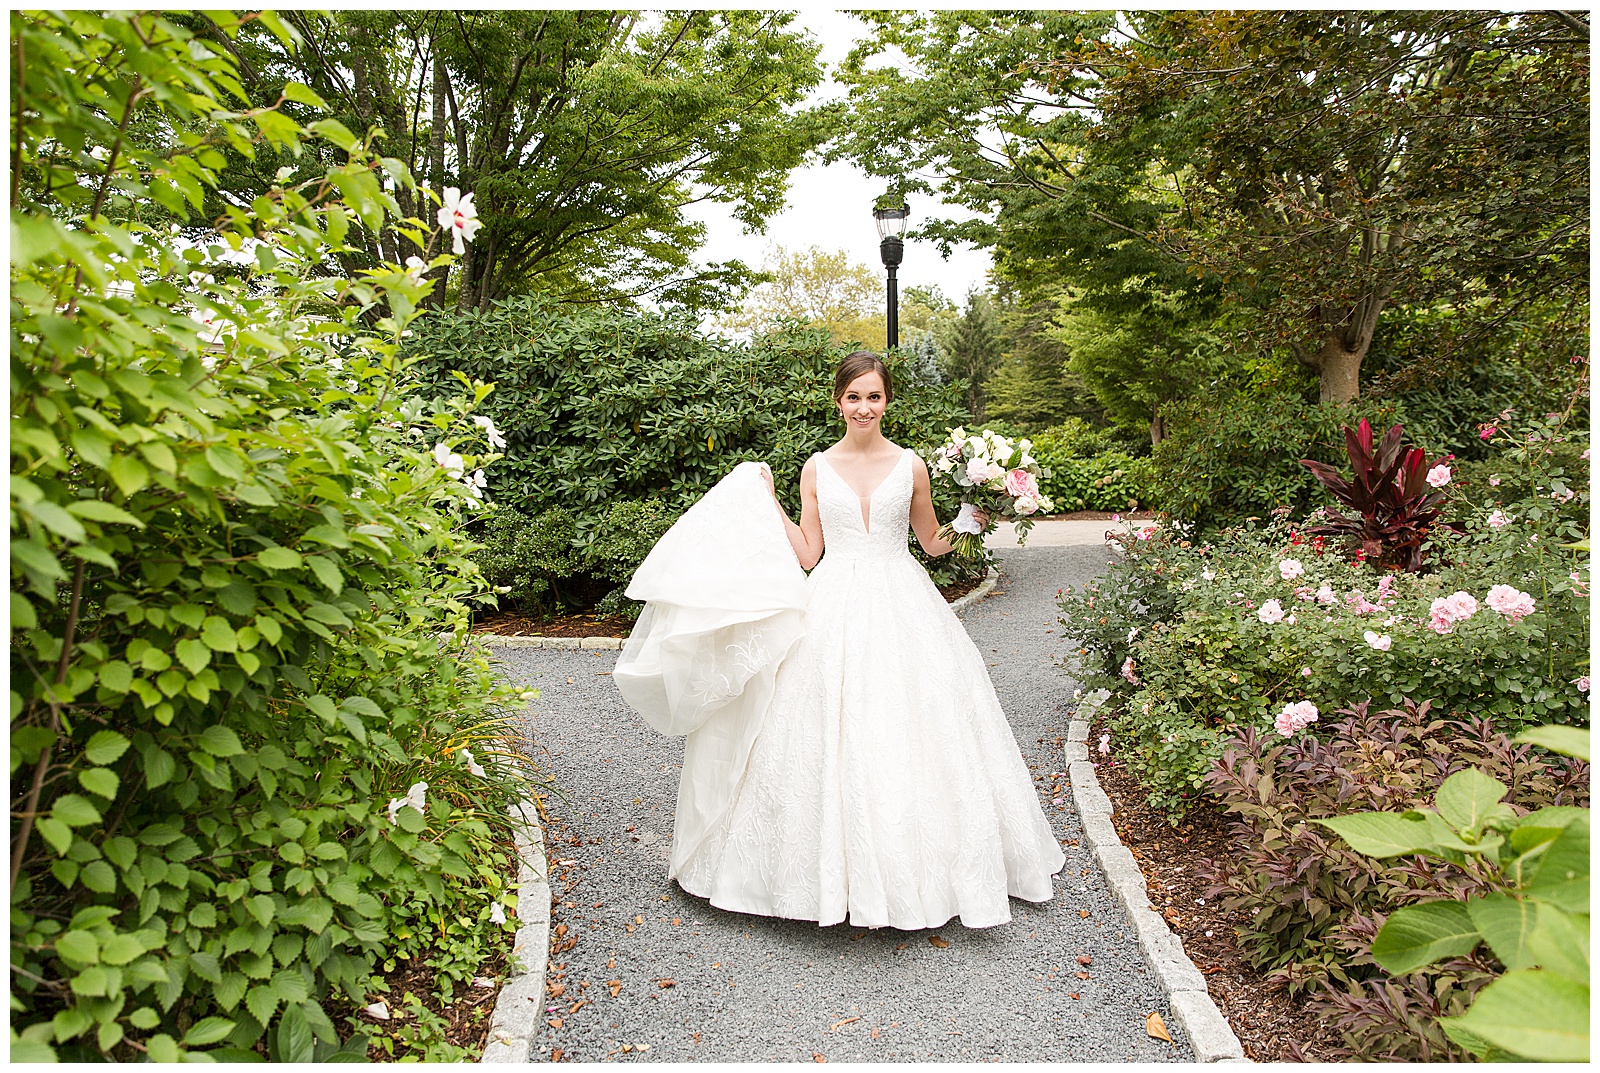 Bride walks down the garden path to meet her groom